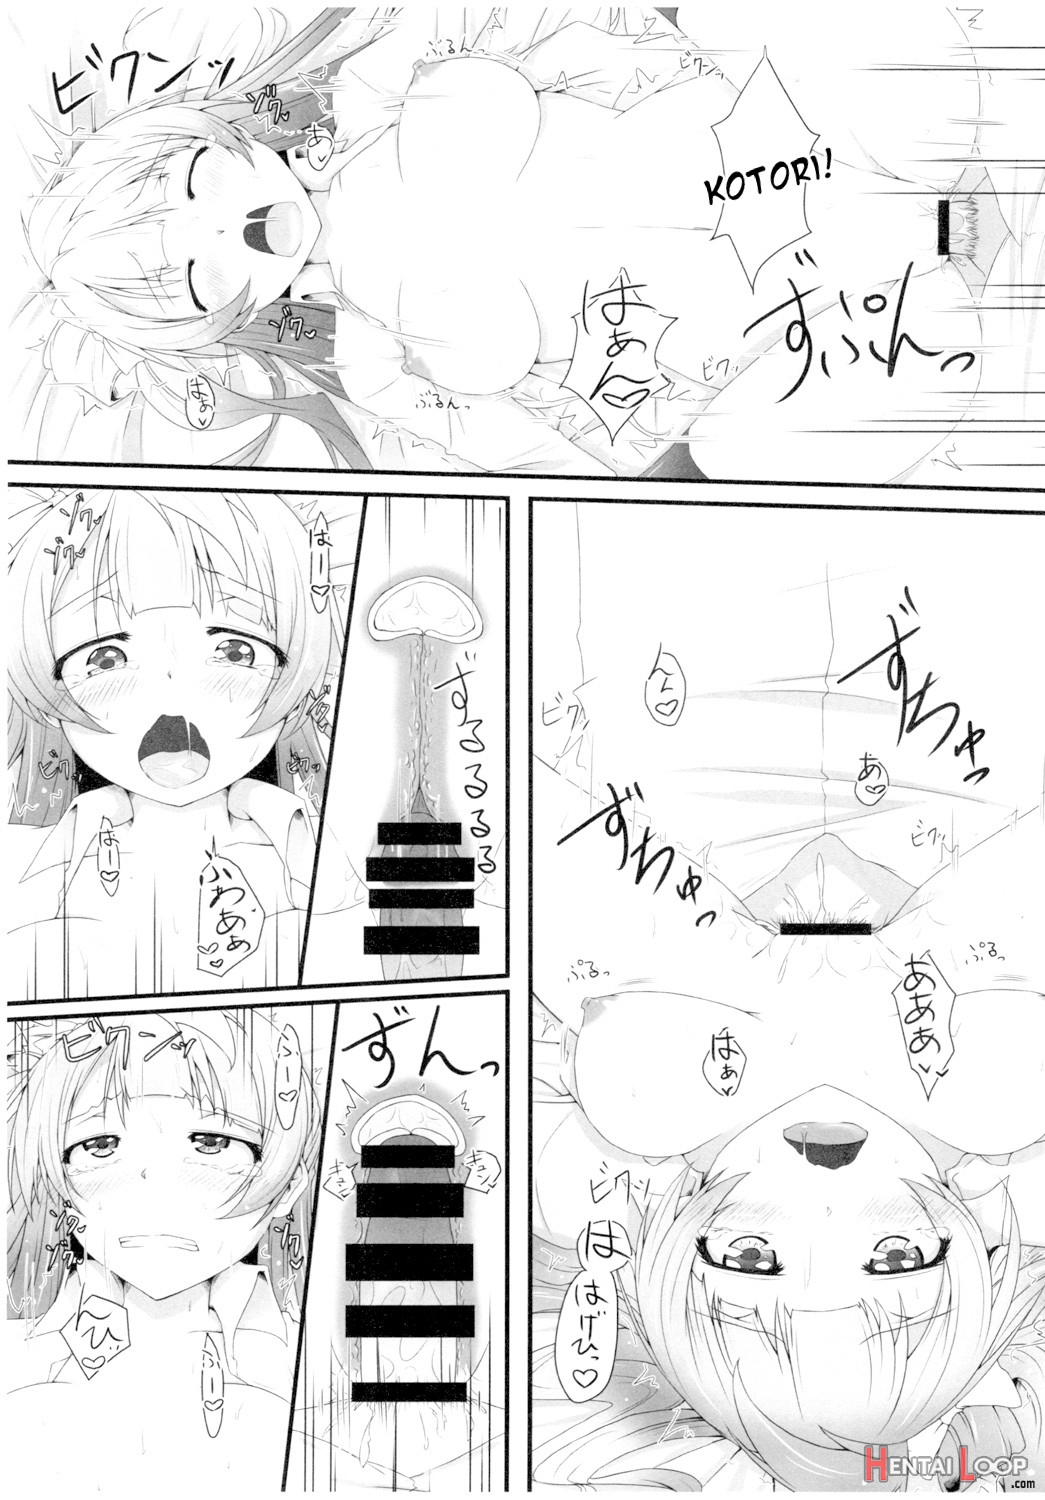 Kotori-chan To! page 7